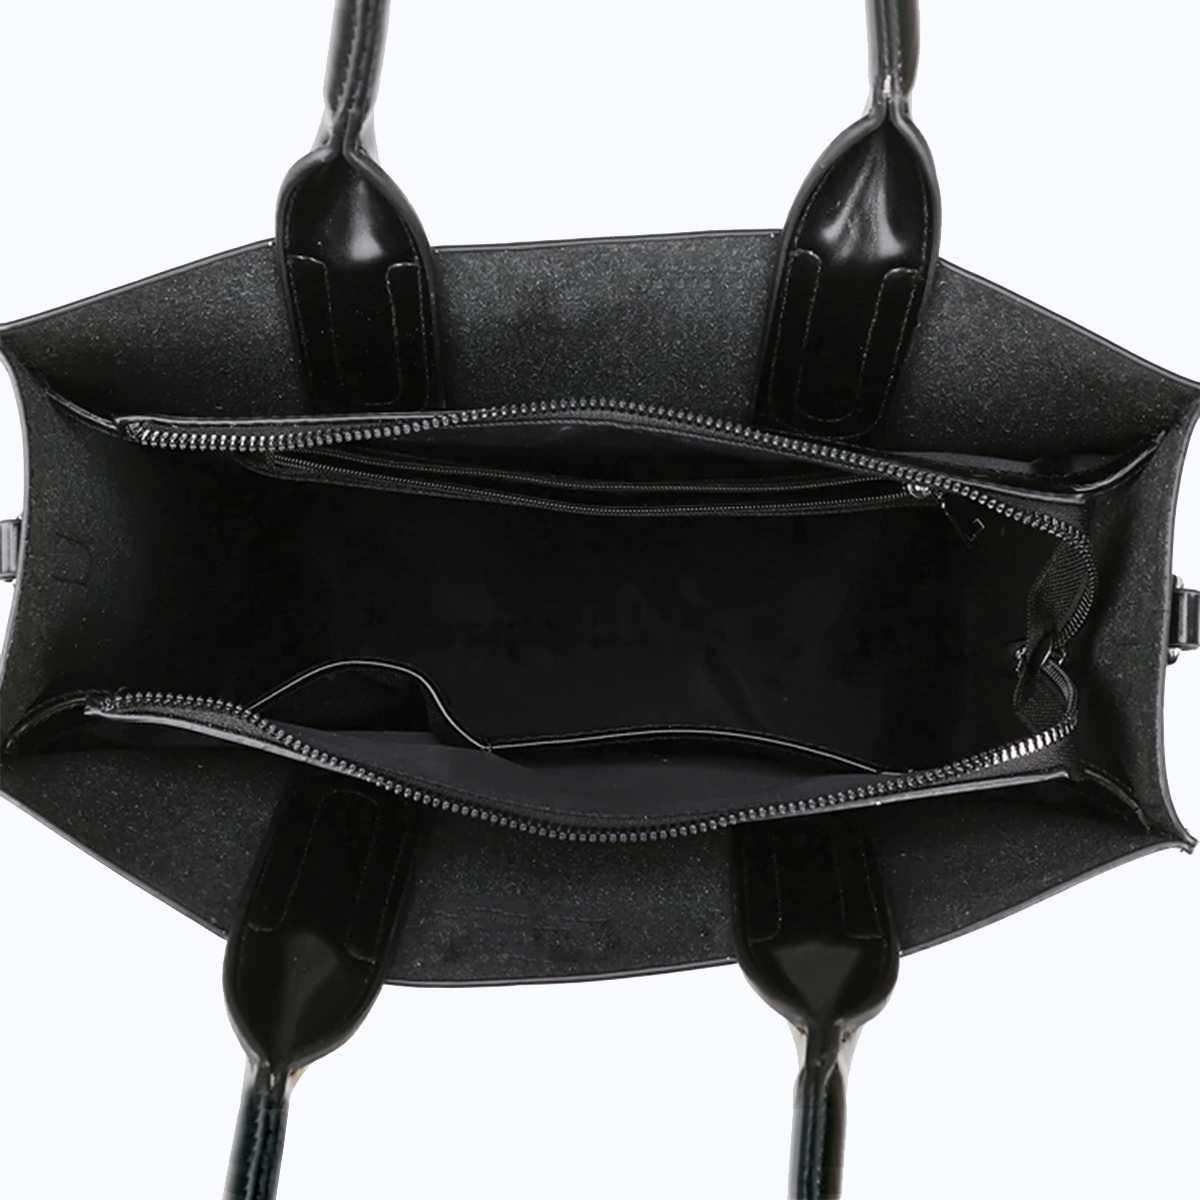 Chihuahua Luxury Handbag V2